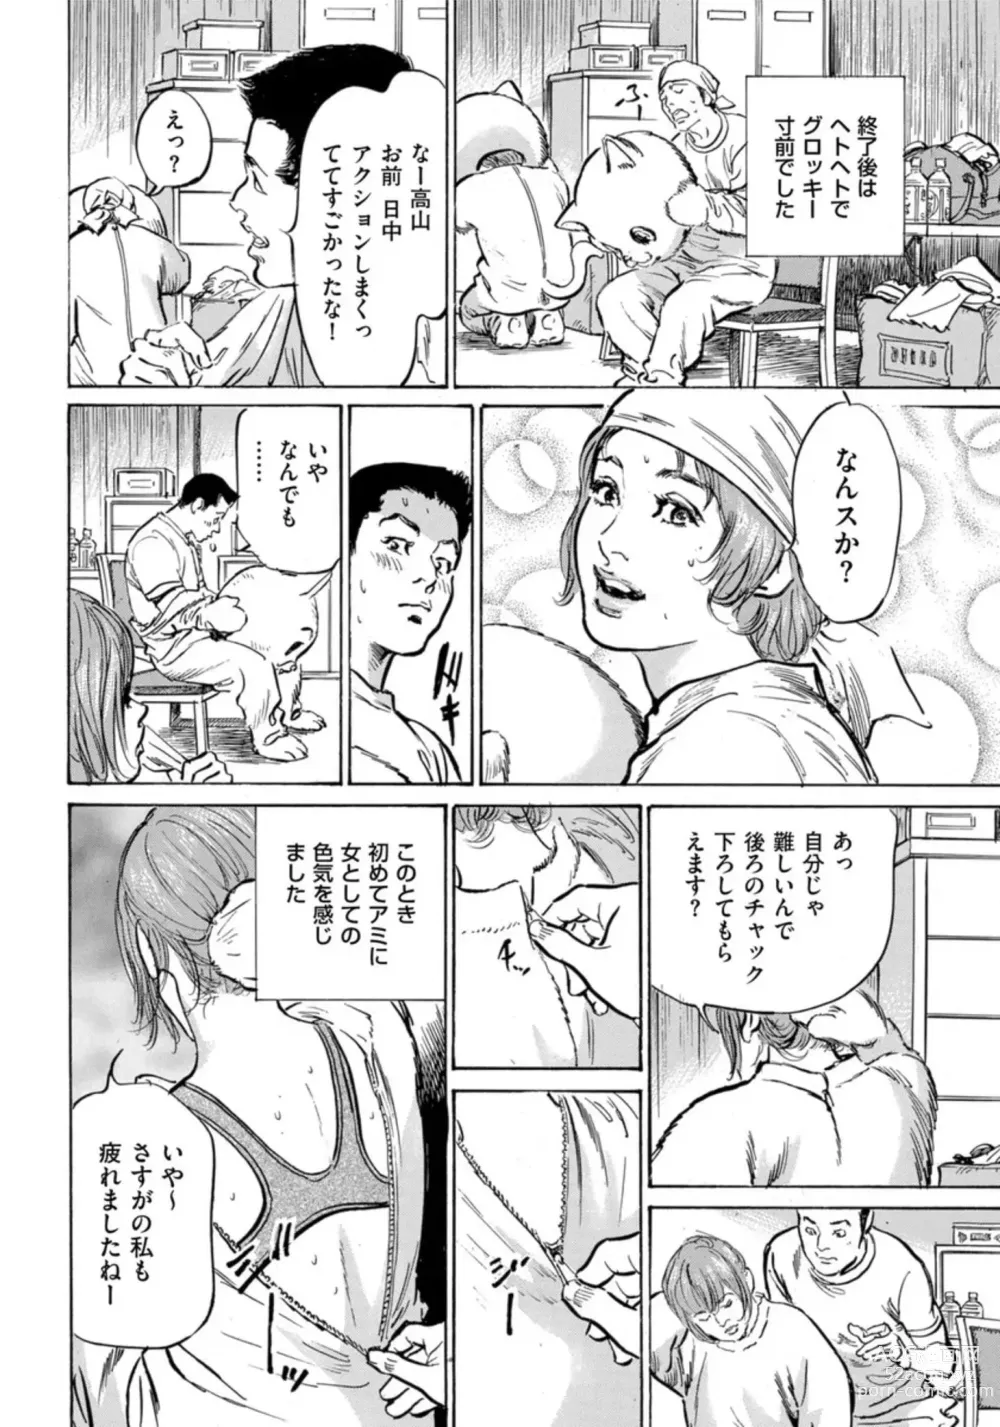 Page 7 of manga Zutto Himitsu ni Shiteita Ano Koto Zenbu Oshiemasu 14 episodes